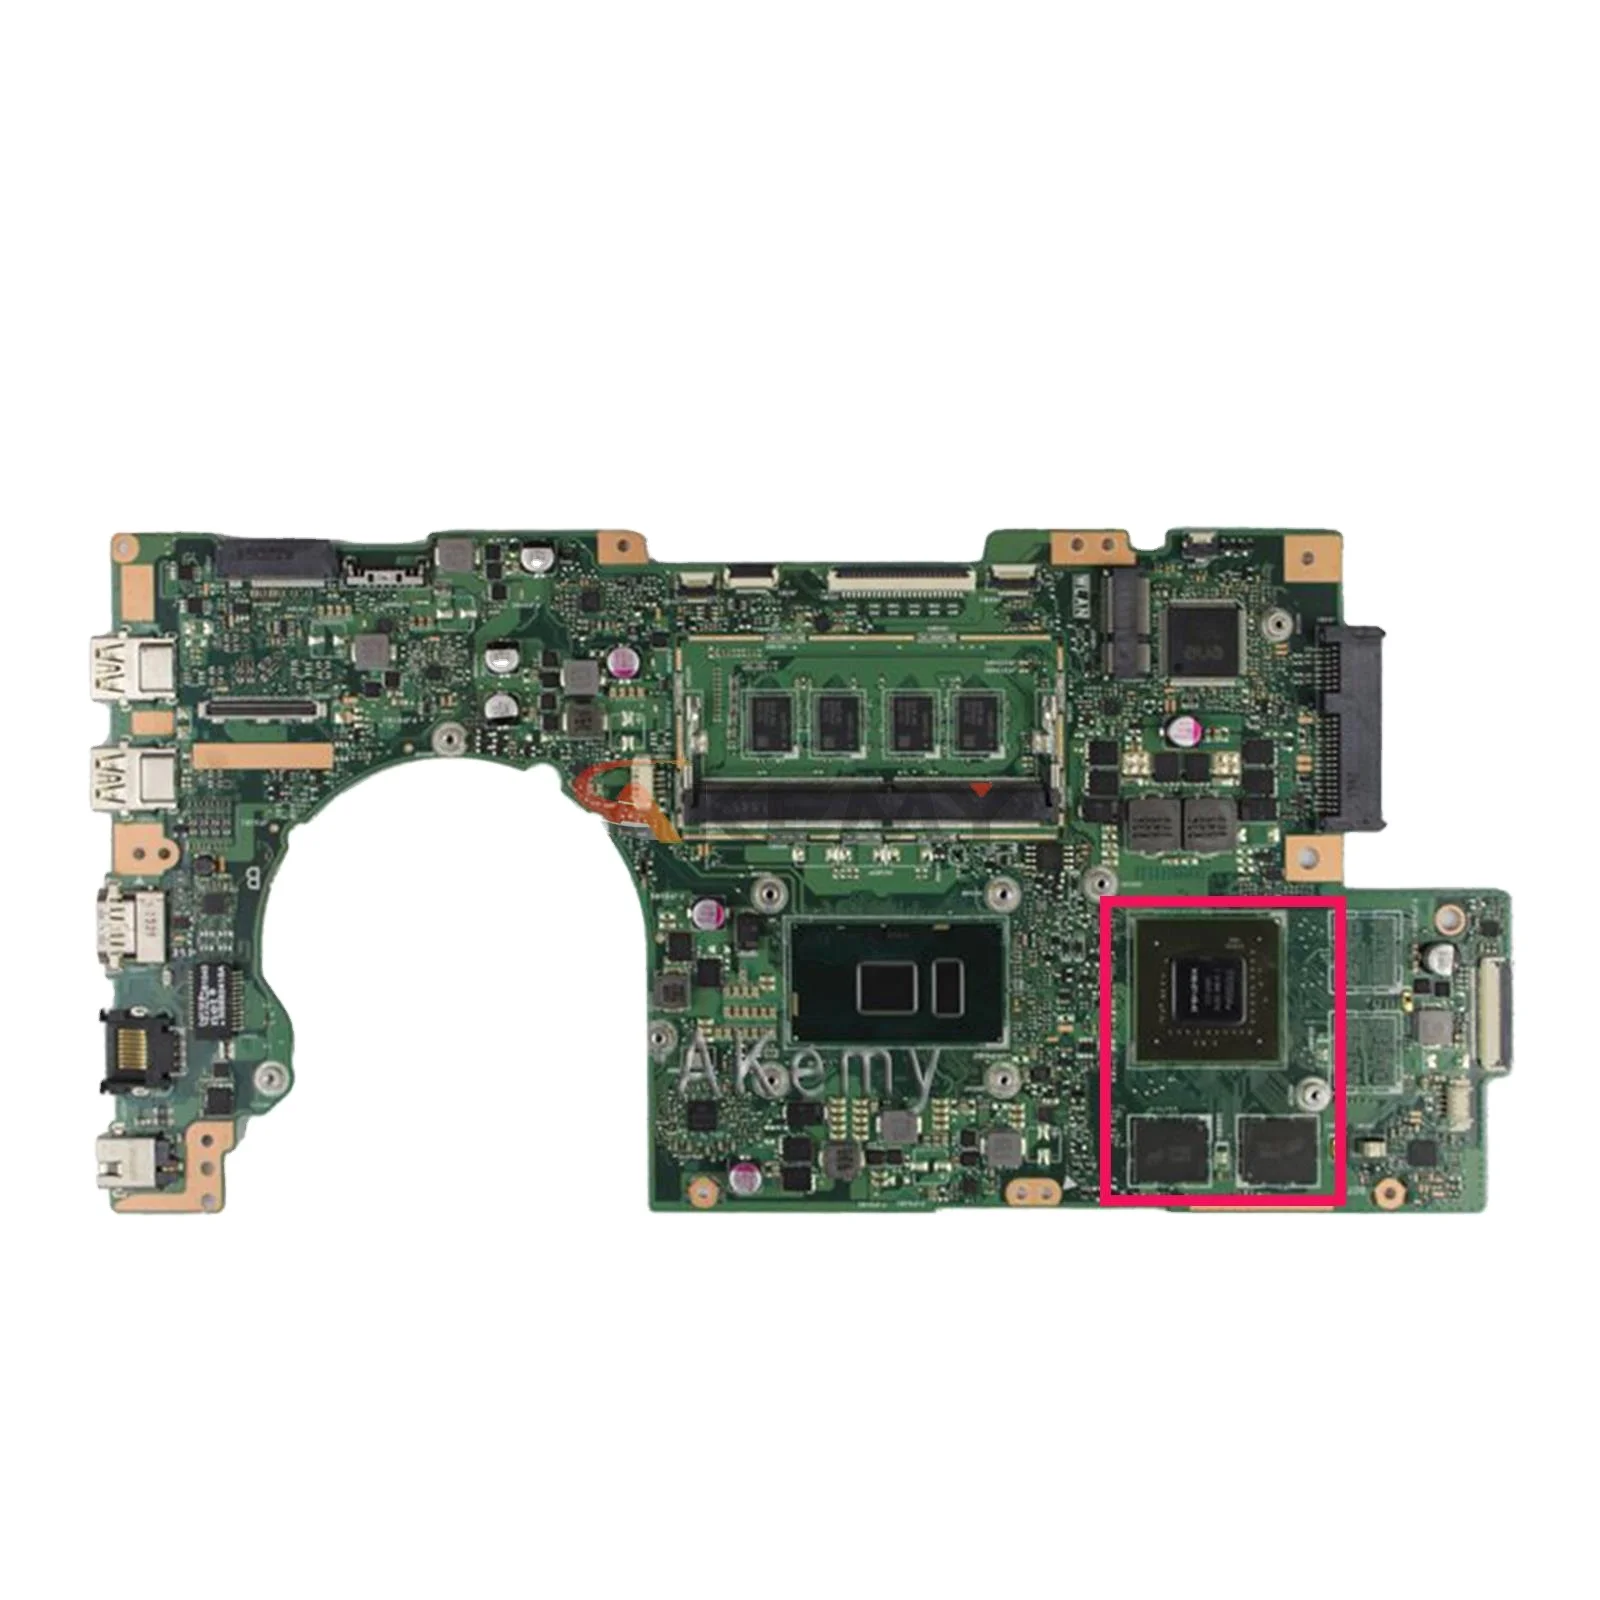 

K501UB Notebook Mainboard DDR3 DDR4 4GB 8GB RAM I3 I5 I7 CPU GT940M GPU For Asus K501U K501UX K501UQ A501U Laptop Motherboard